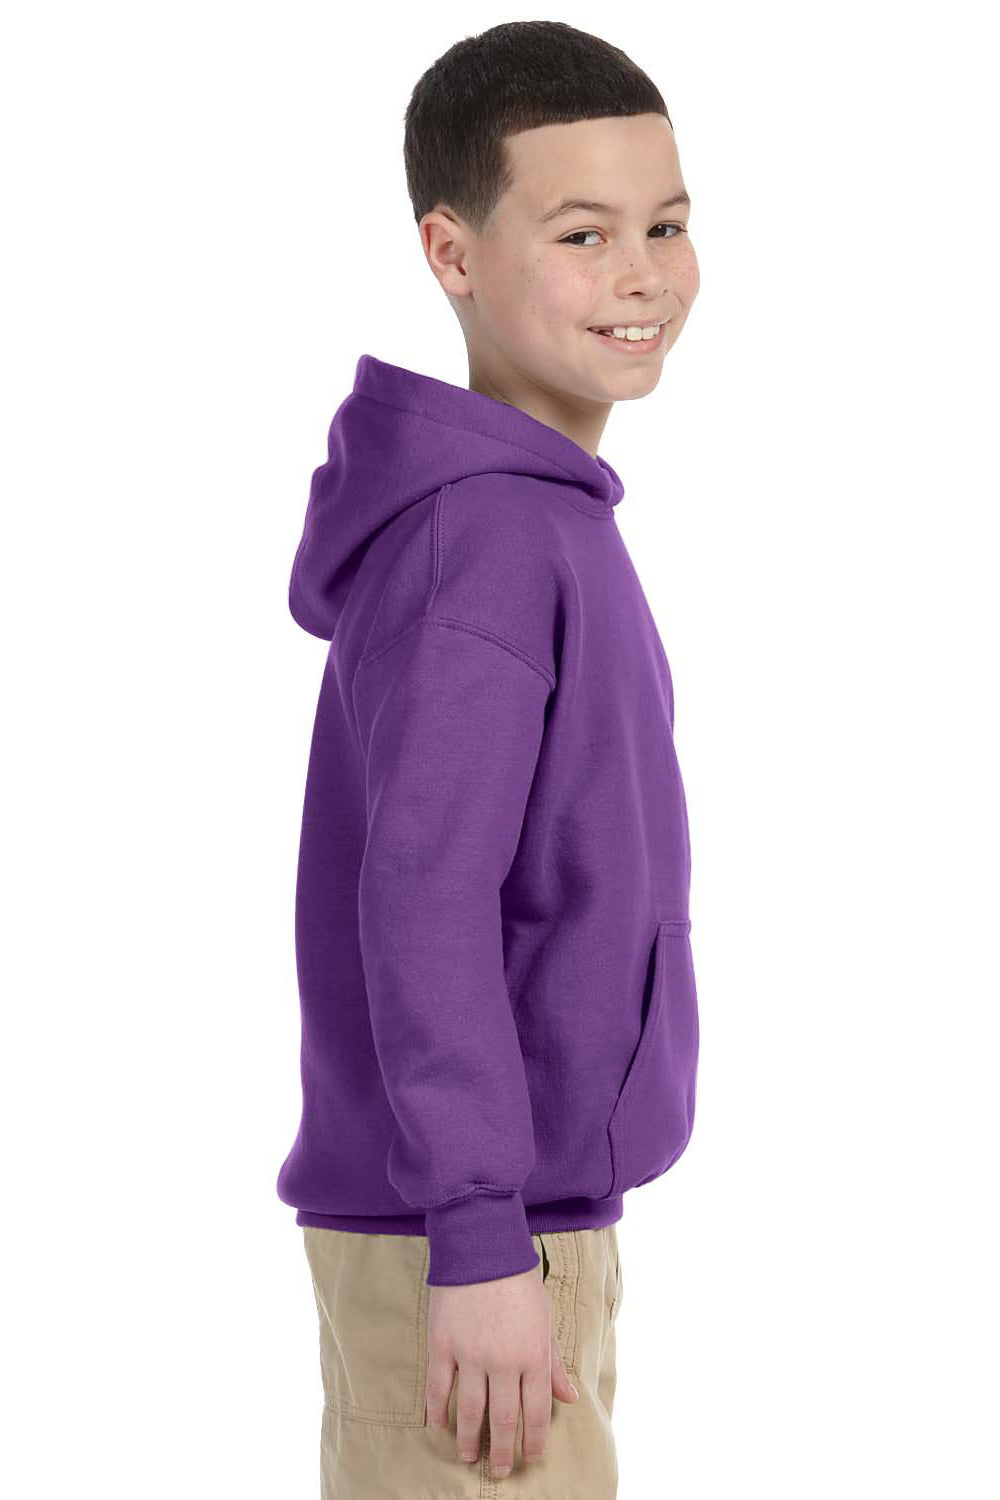 Gildan G185B Youth Hooded Sweatshirt Hoodie Purple Side